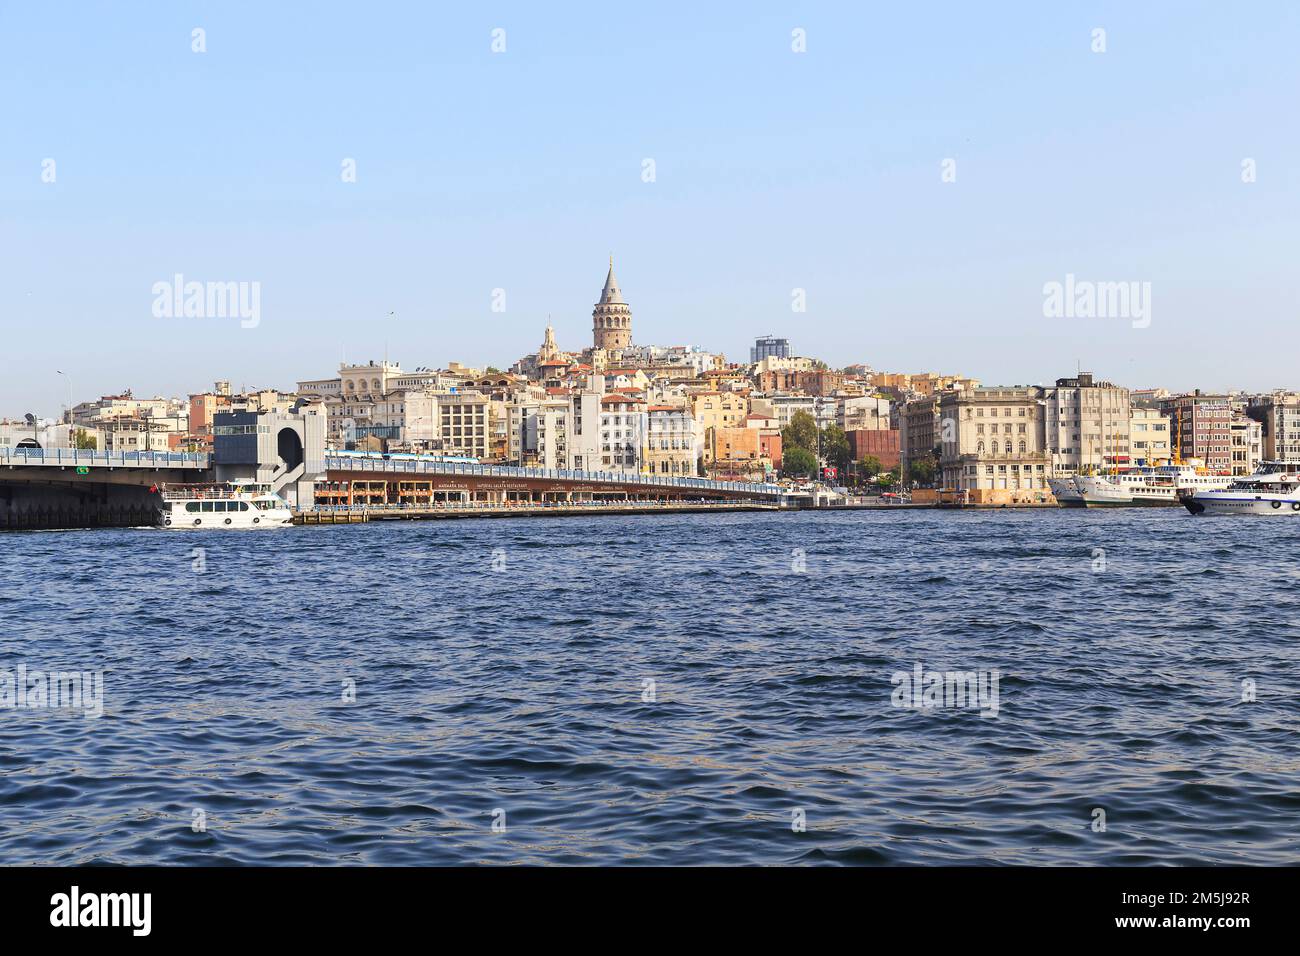 ISTANBUL, TURQUIE - 12 SEPTEMBRE 2017 : vue sur le pont de Galata, à travers la baie de la Corne d'Or et le quartier historique de Galata. Banque D'Images